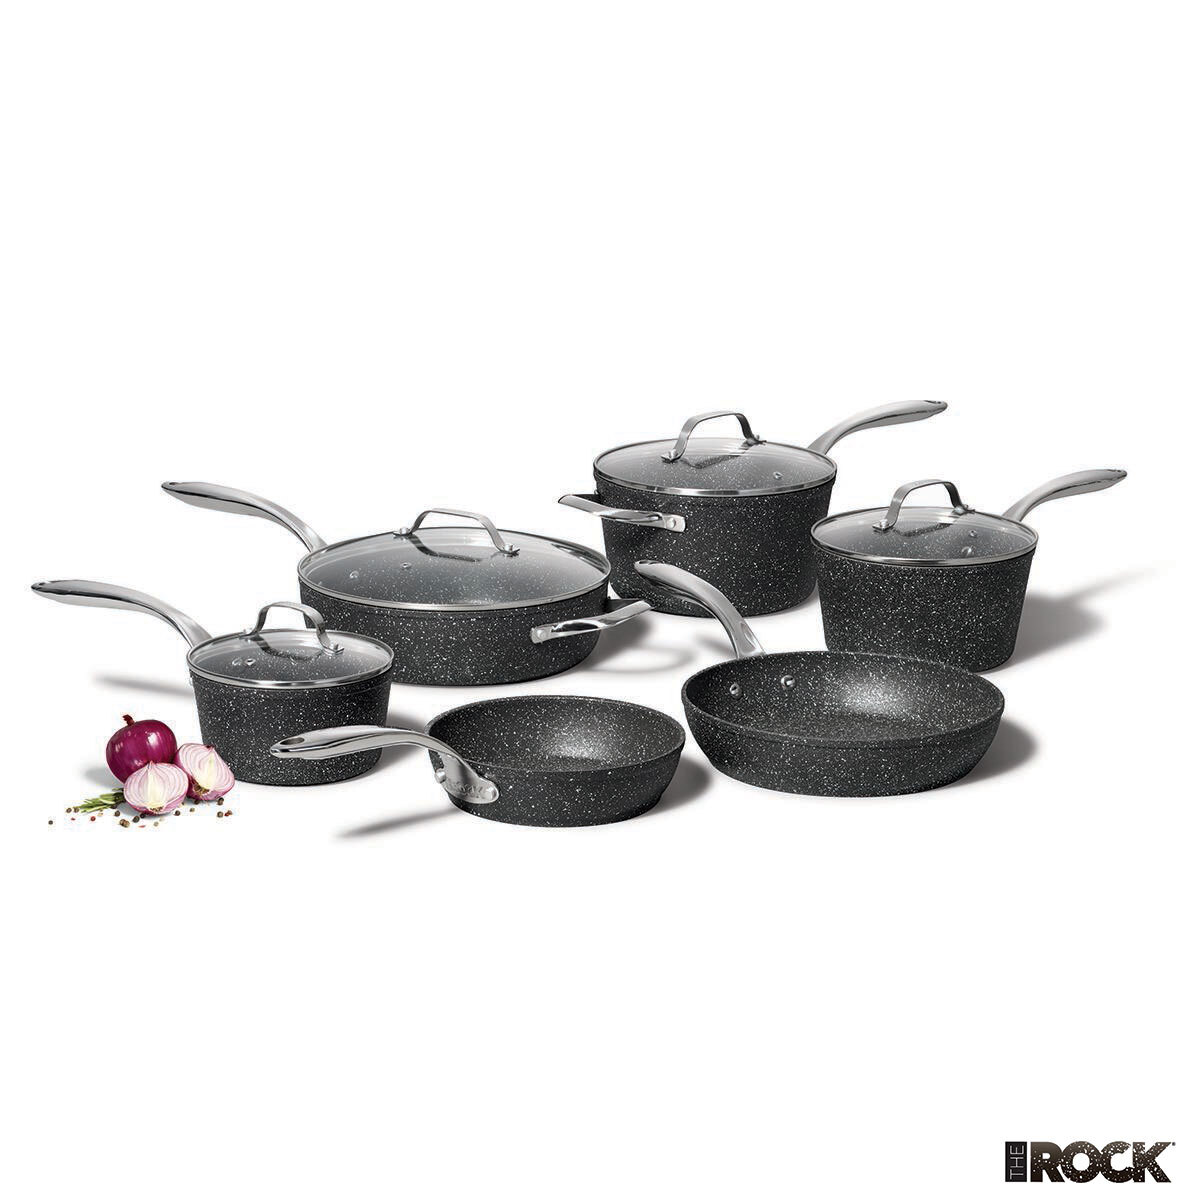 Starfrit The Rock 5-Piece Cookware Set 